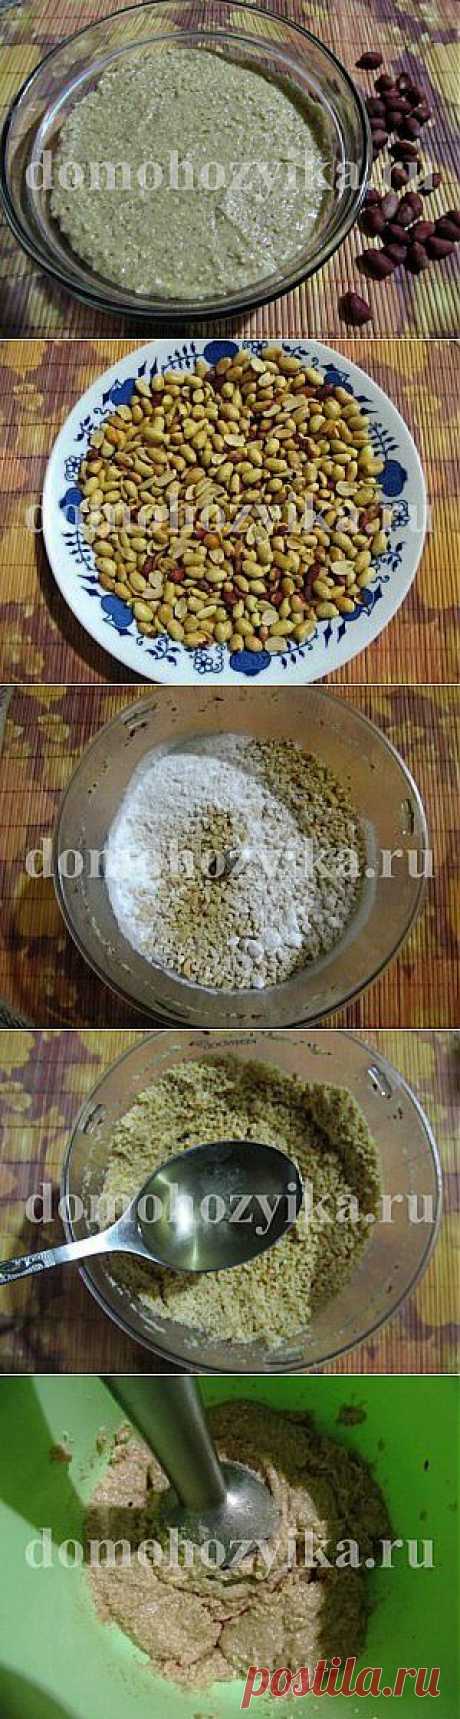 Арахисовая паста-рецепт приготовления с фото